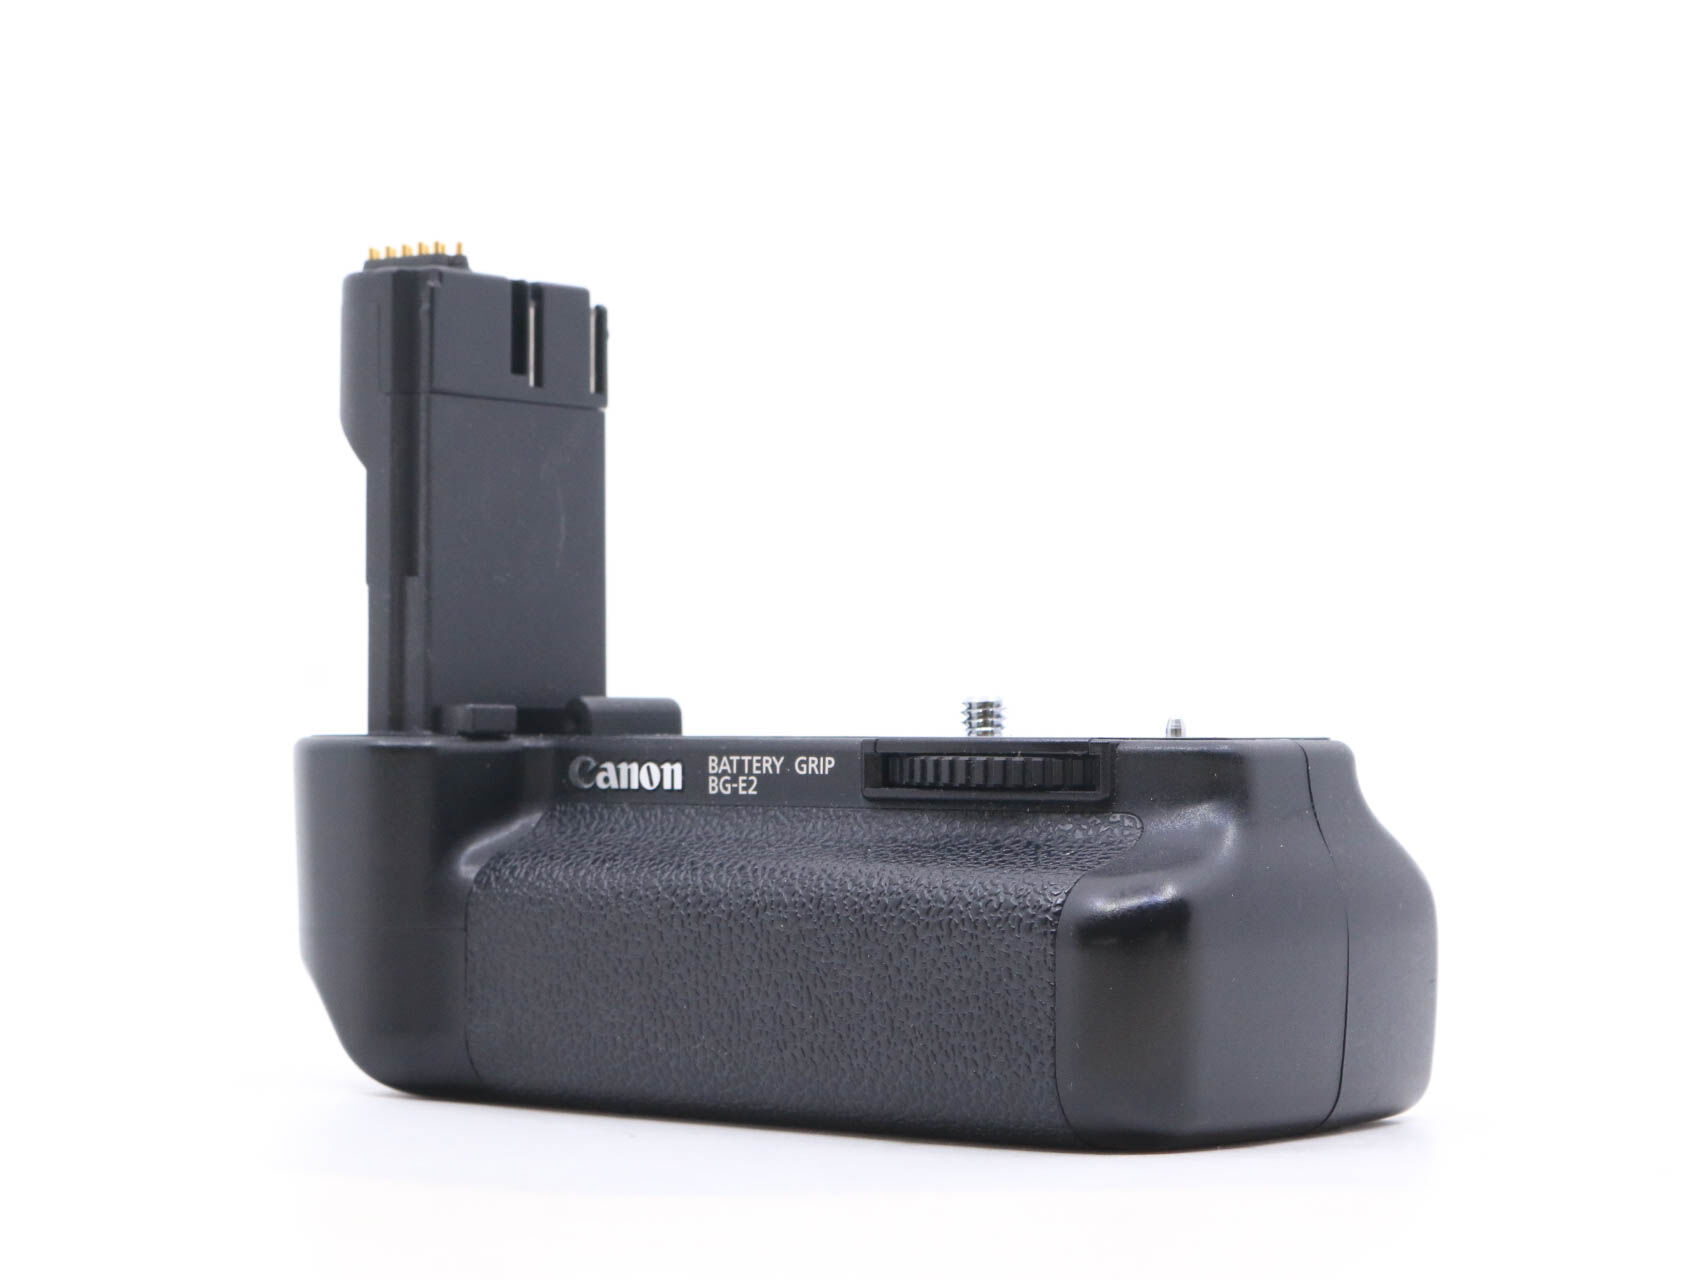 Canon BG-E2 Battery Grip (Condition: Good)